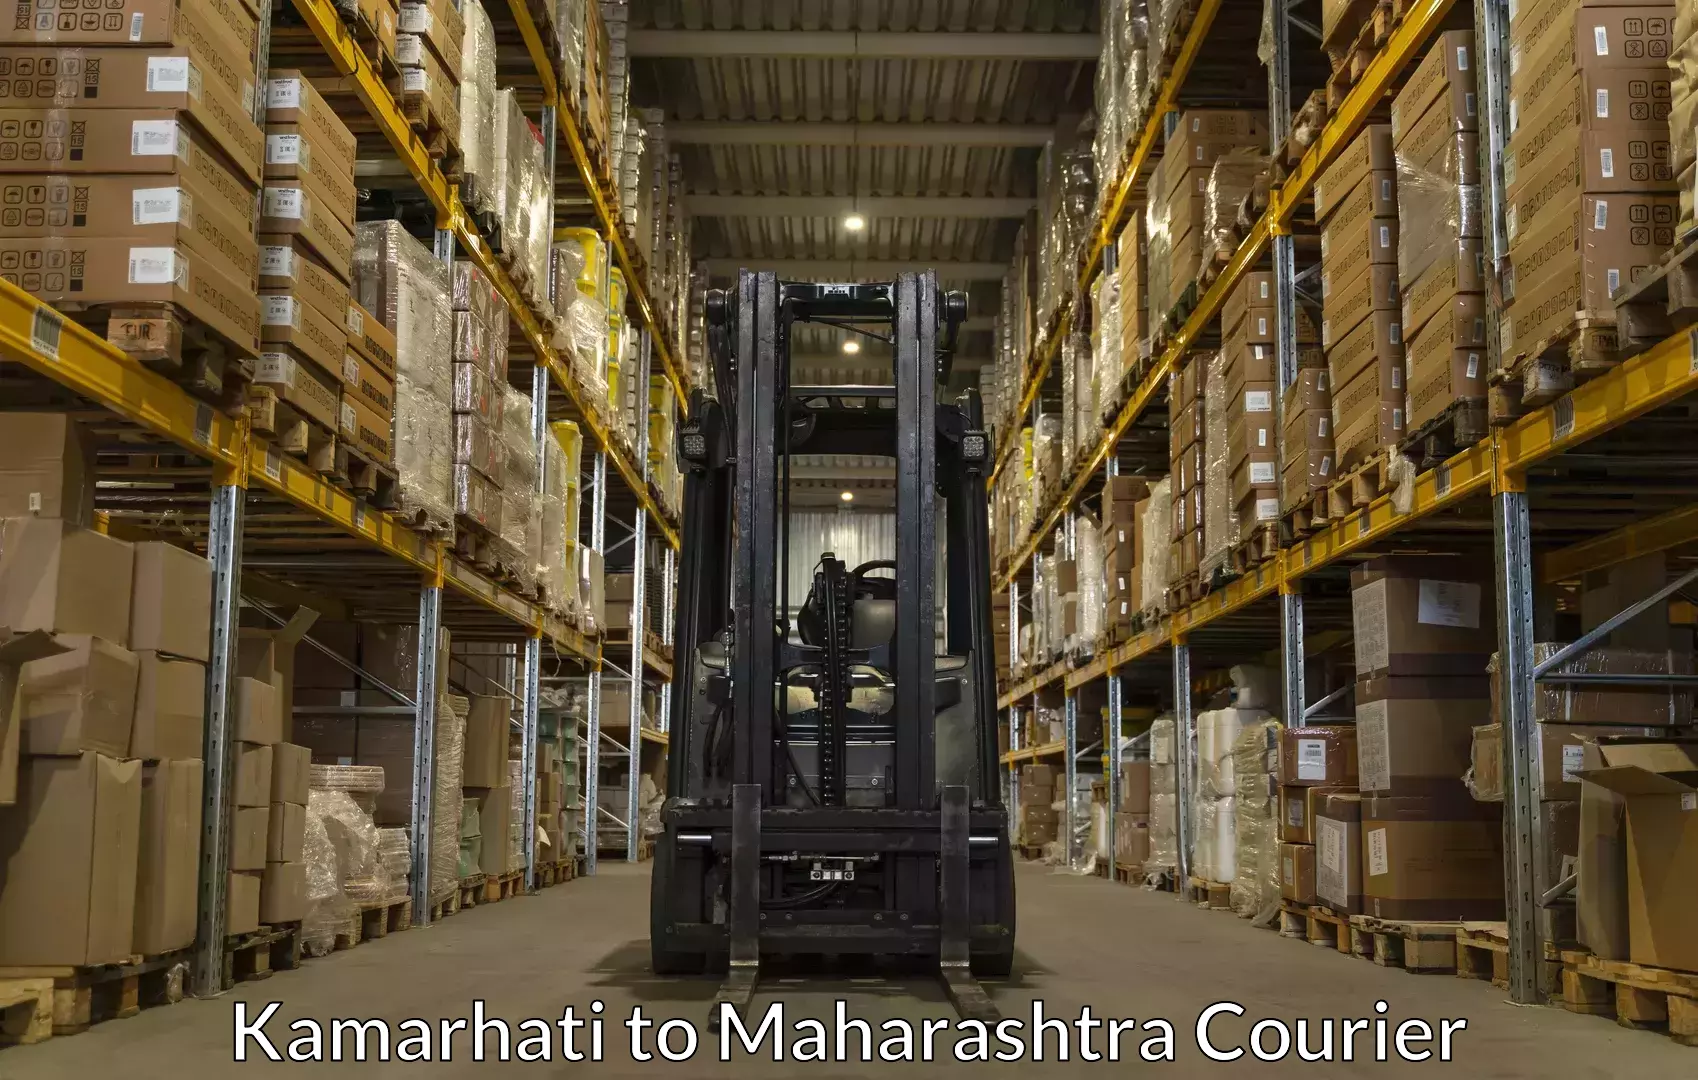 Luggage shipping consultation Kamarhati to Aurangabad